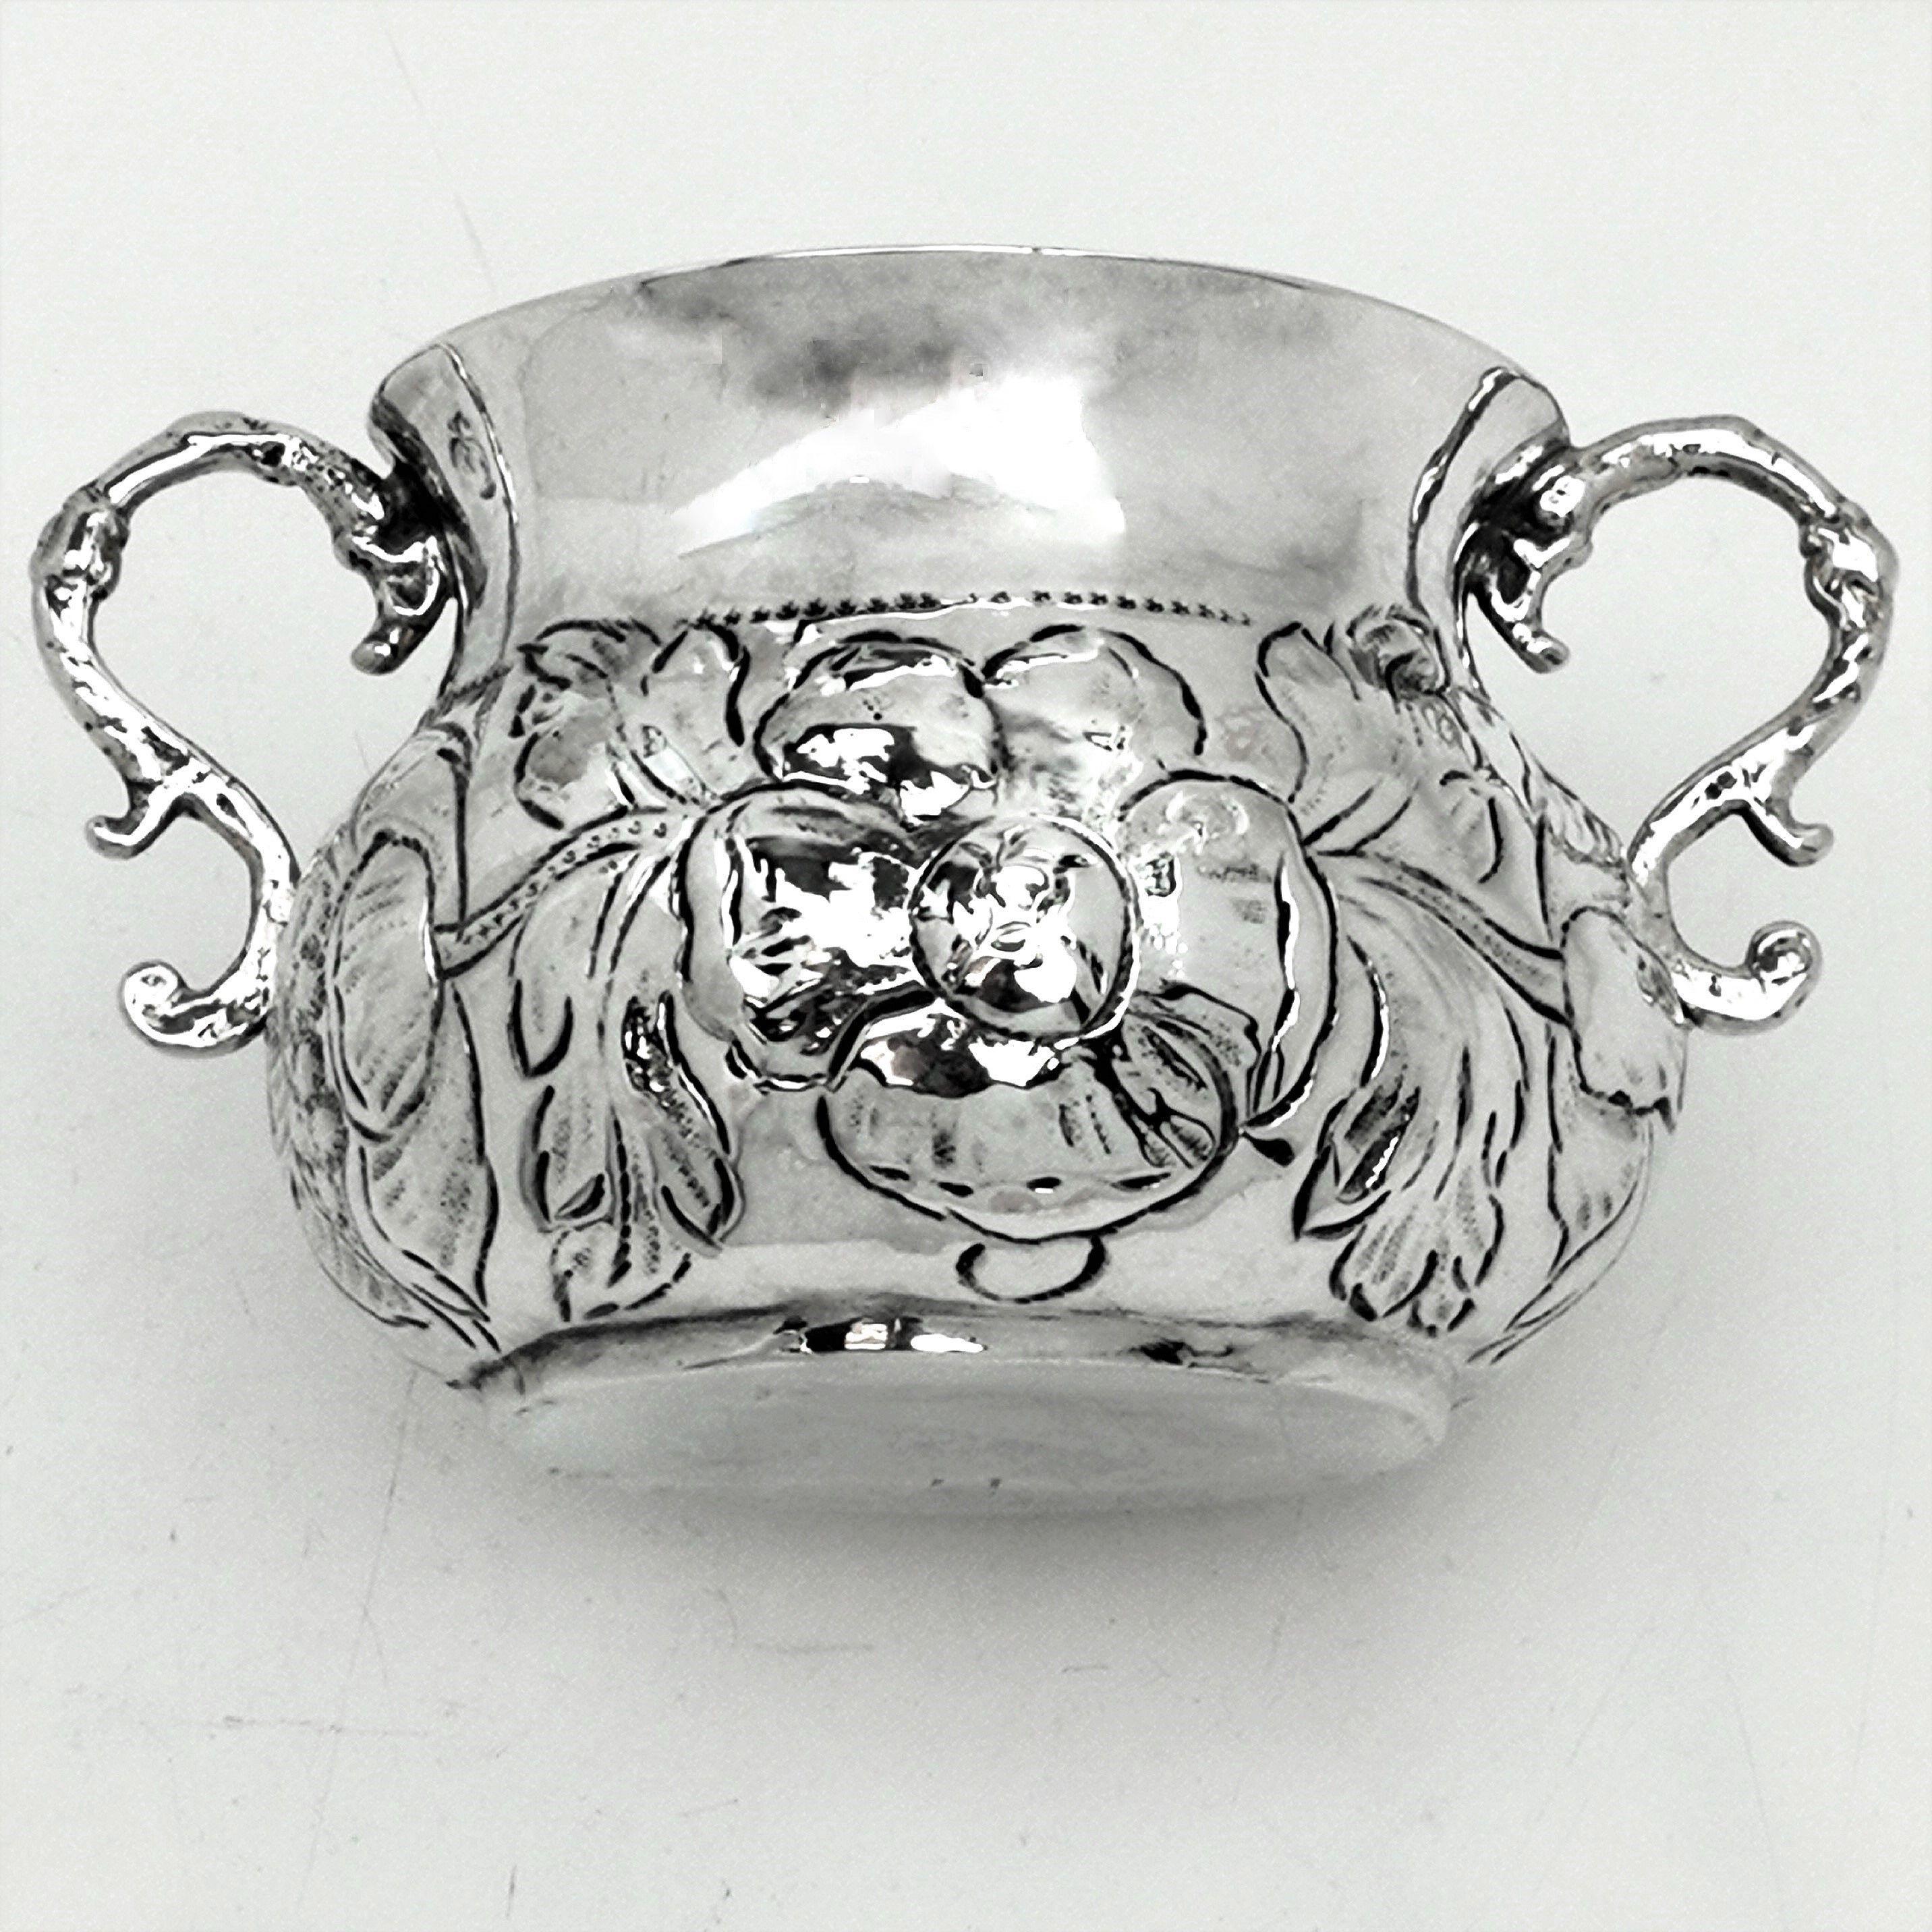 Eine wunderbare 17. Jahrhundert Charles II Antique massivem Silber Porringer / zwei Handgriff Tasse mit einem kunstvollen ziselierten floralen Design rund um den bauchigen Körper des Cups. Der Becher hat zwei elegante Griffe mit Rollen.

Hergestellt